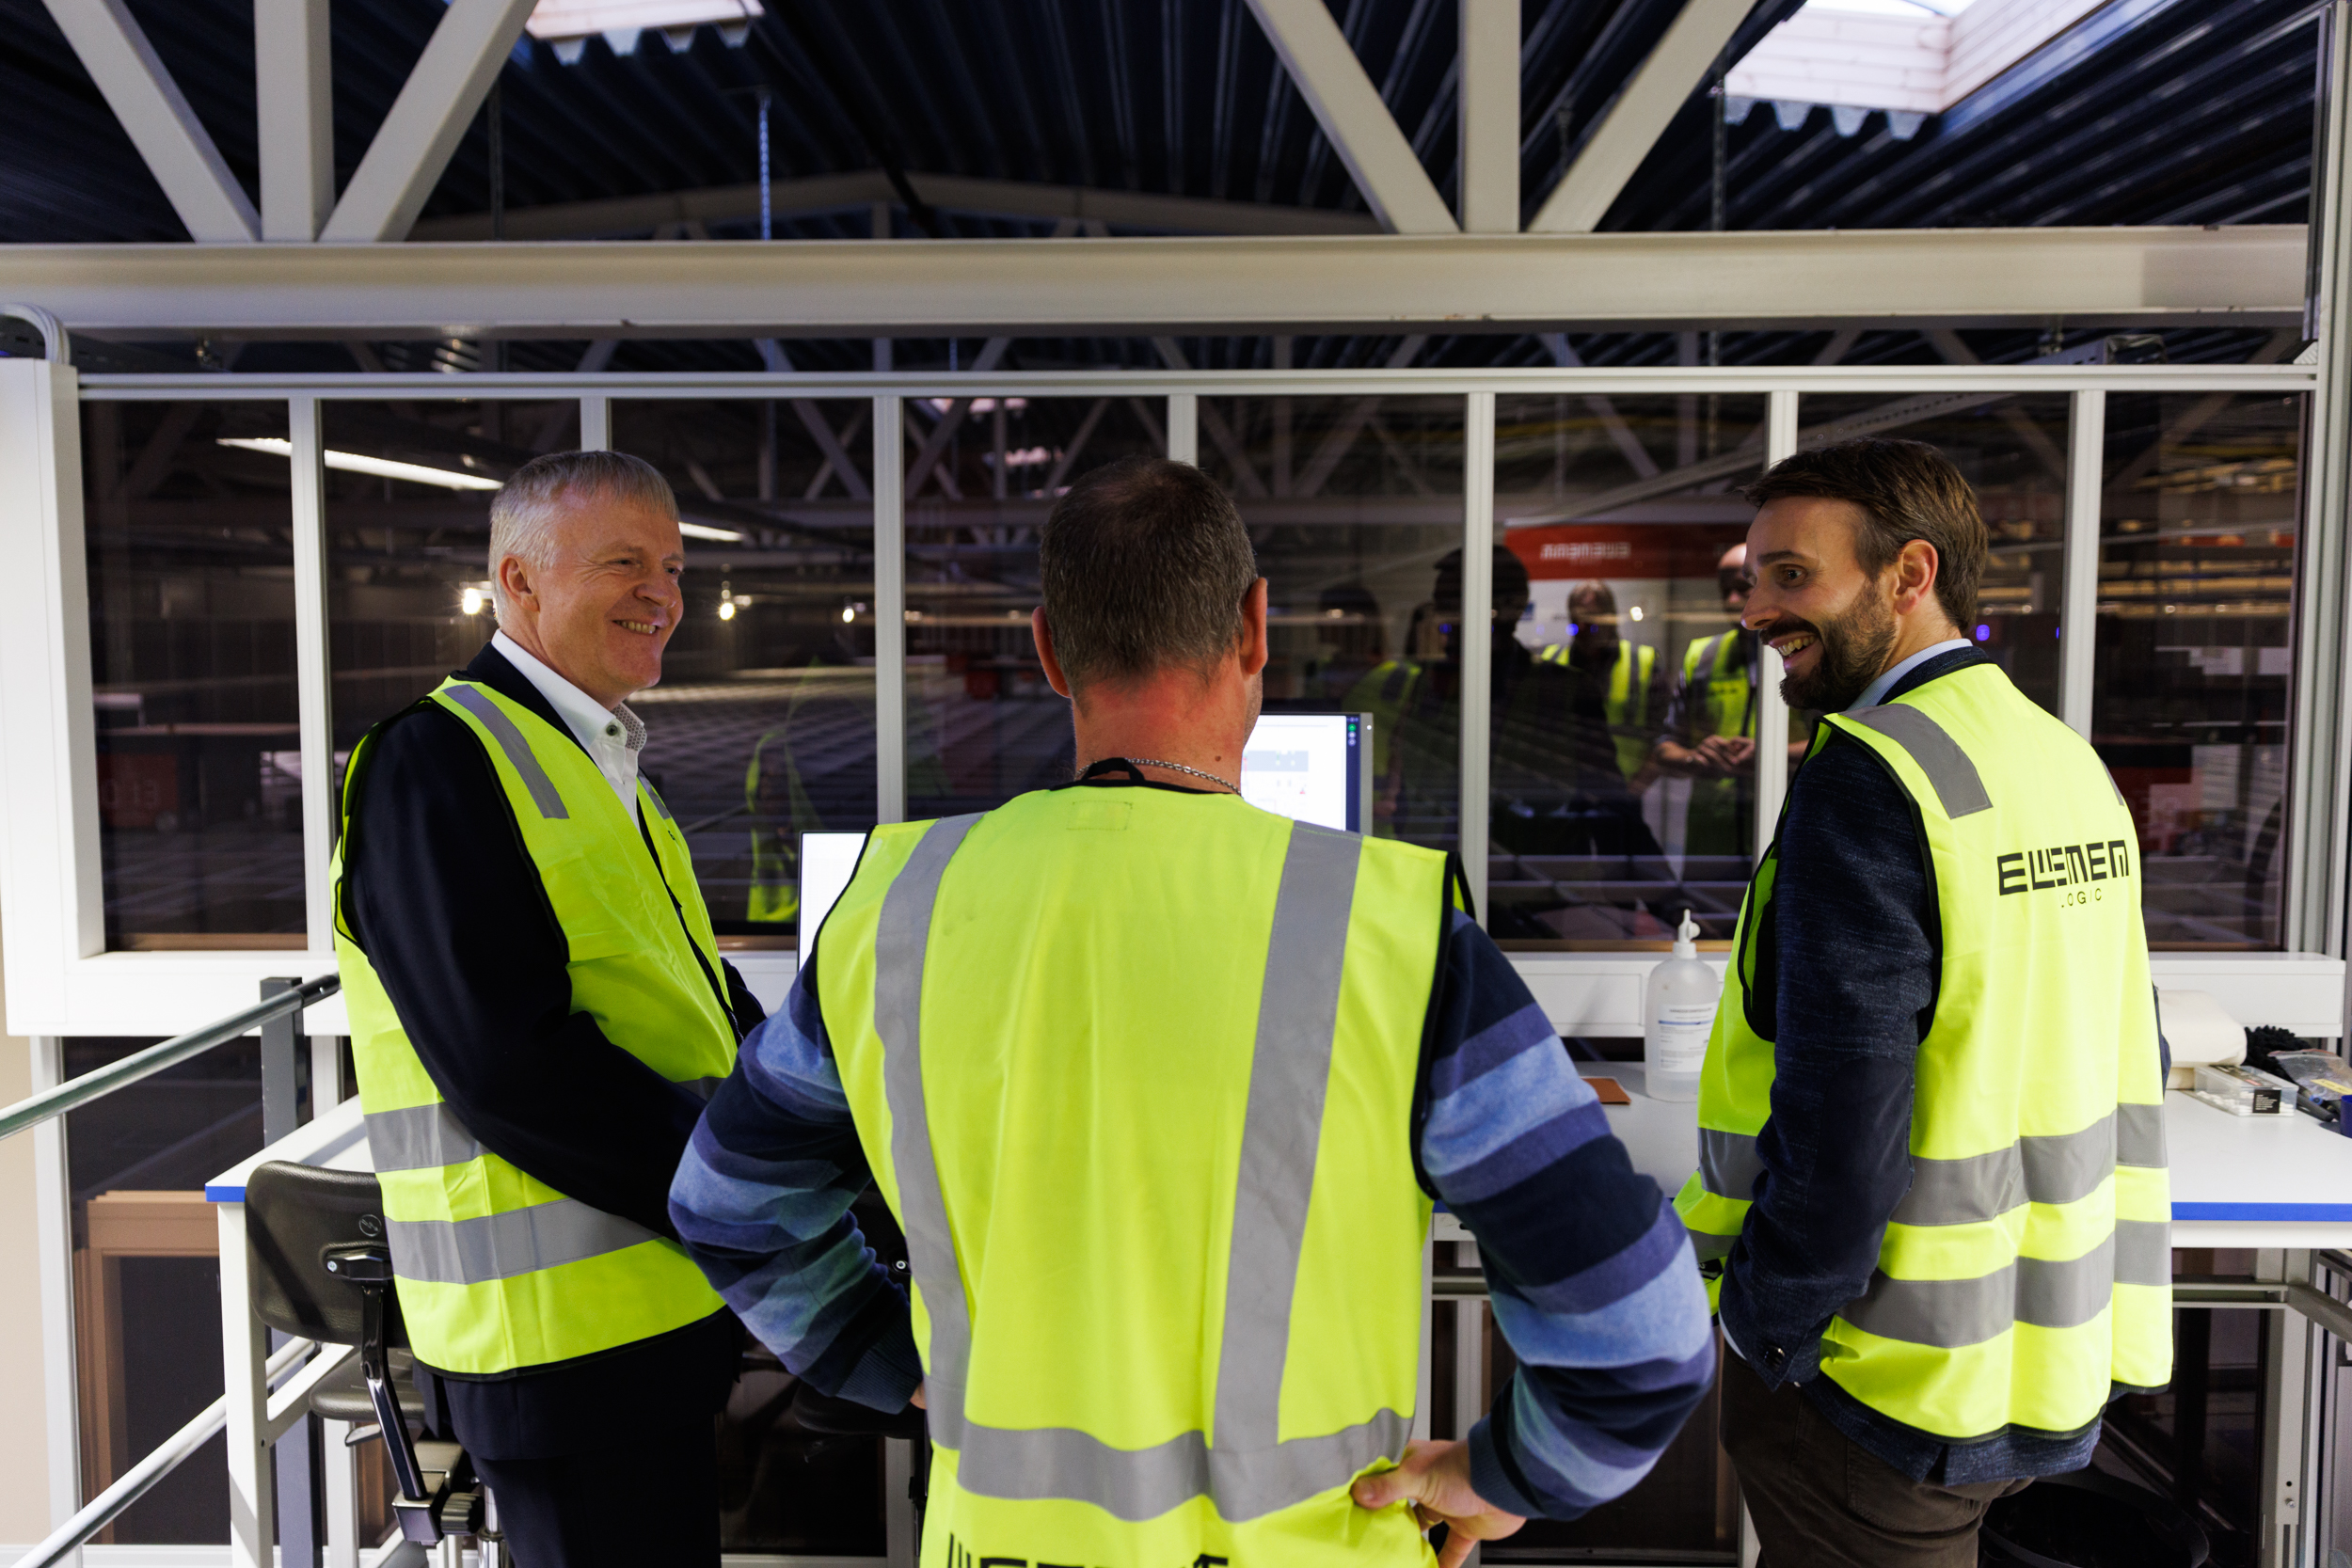 Minister handlu i przemysłu rozmawia z Dag-Adler Blakseth i Lasse Vik, którzy z antresoli spoglądają na siatkę AutoStore